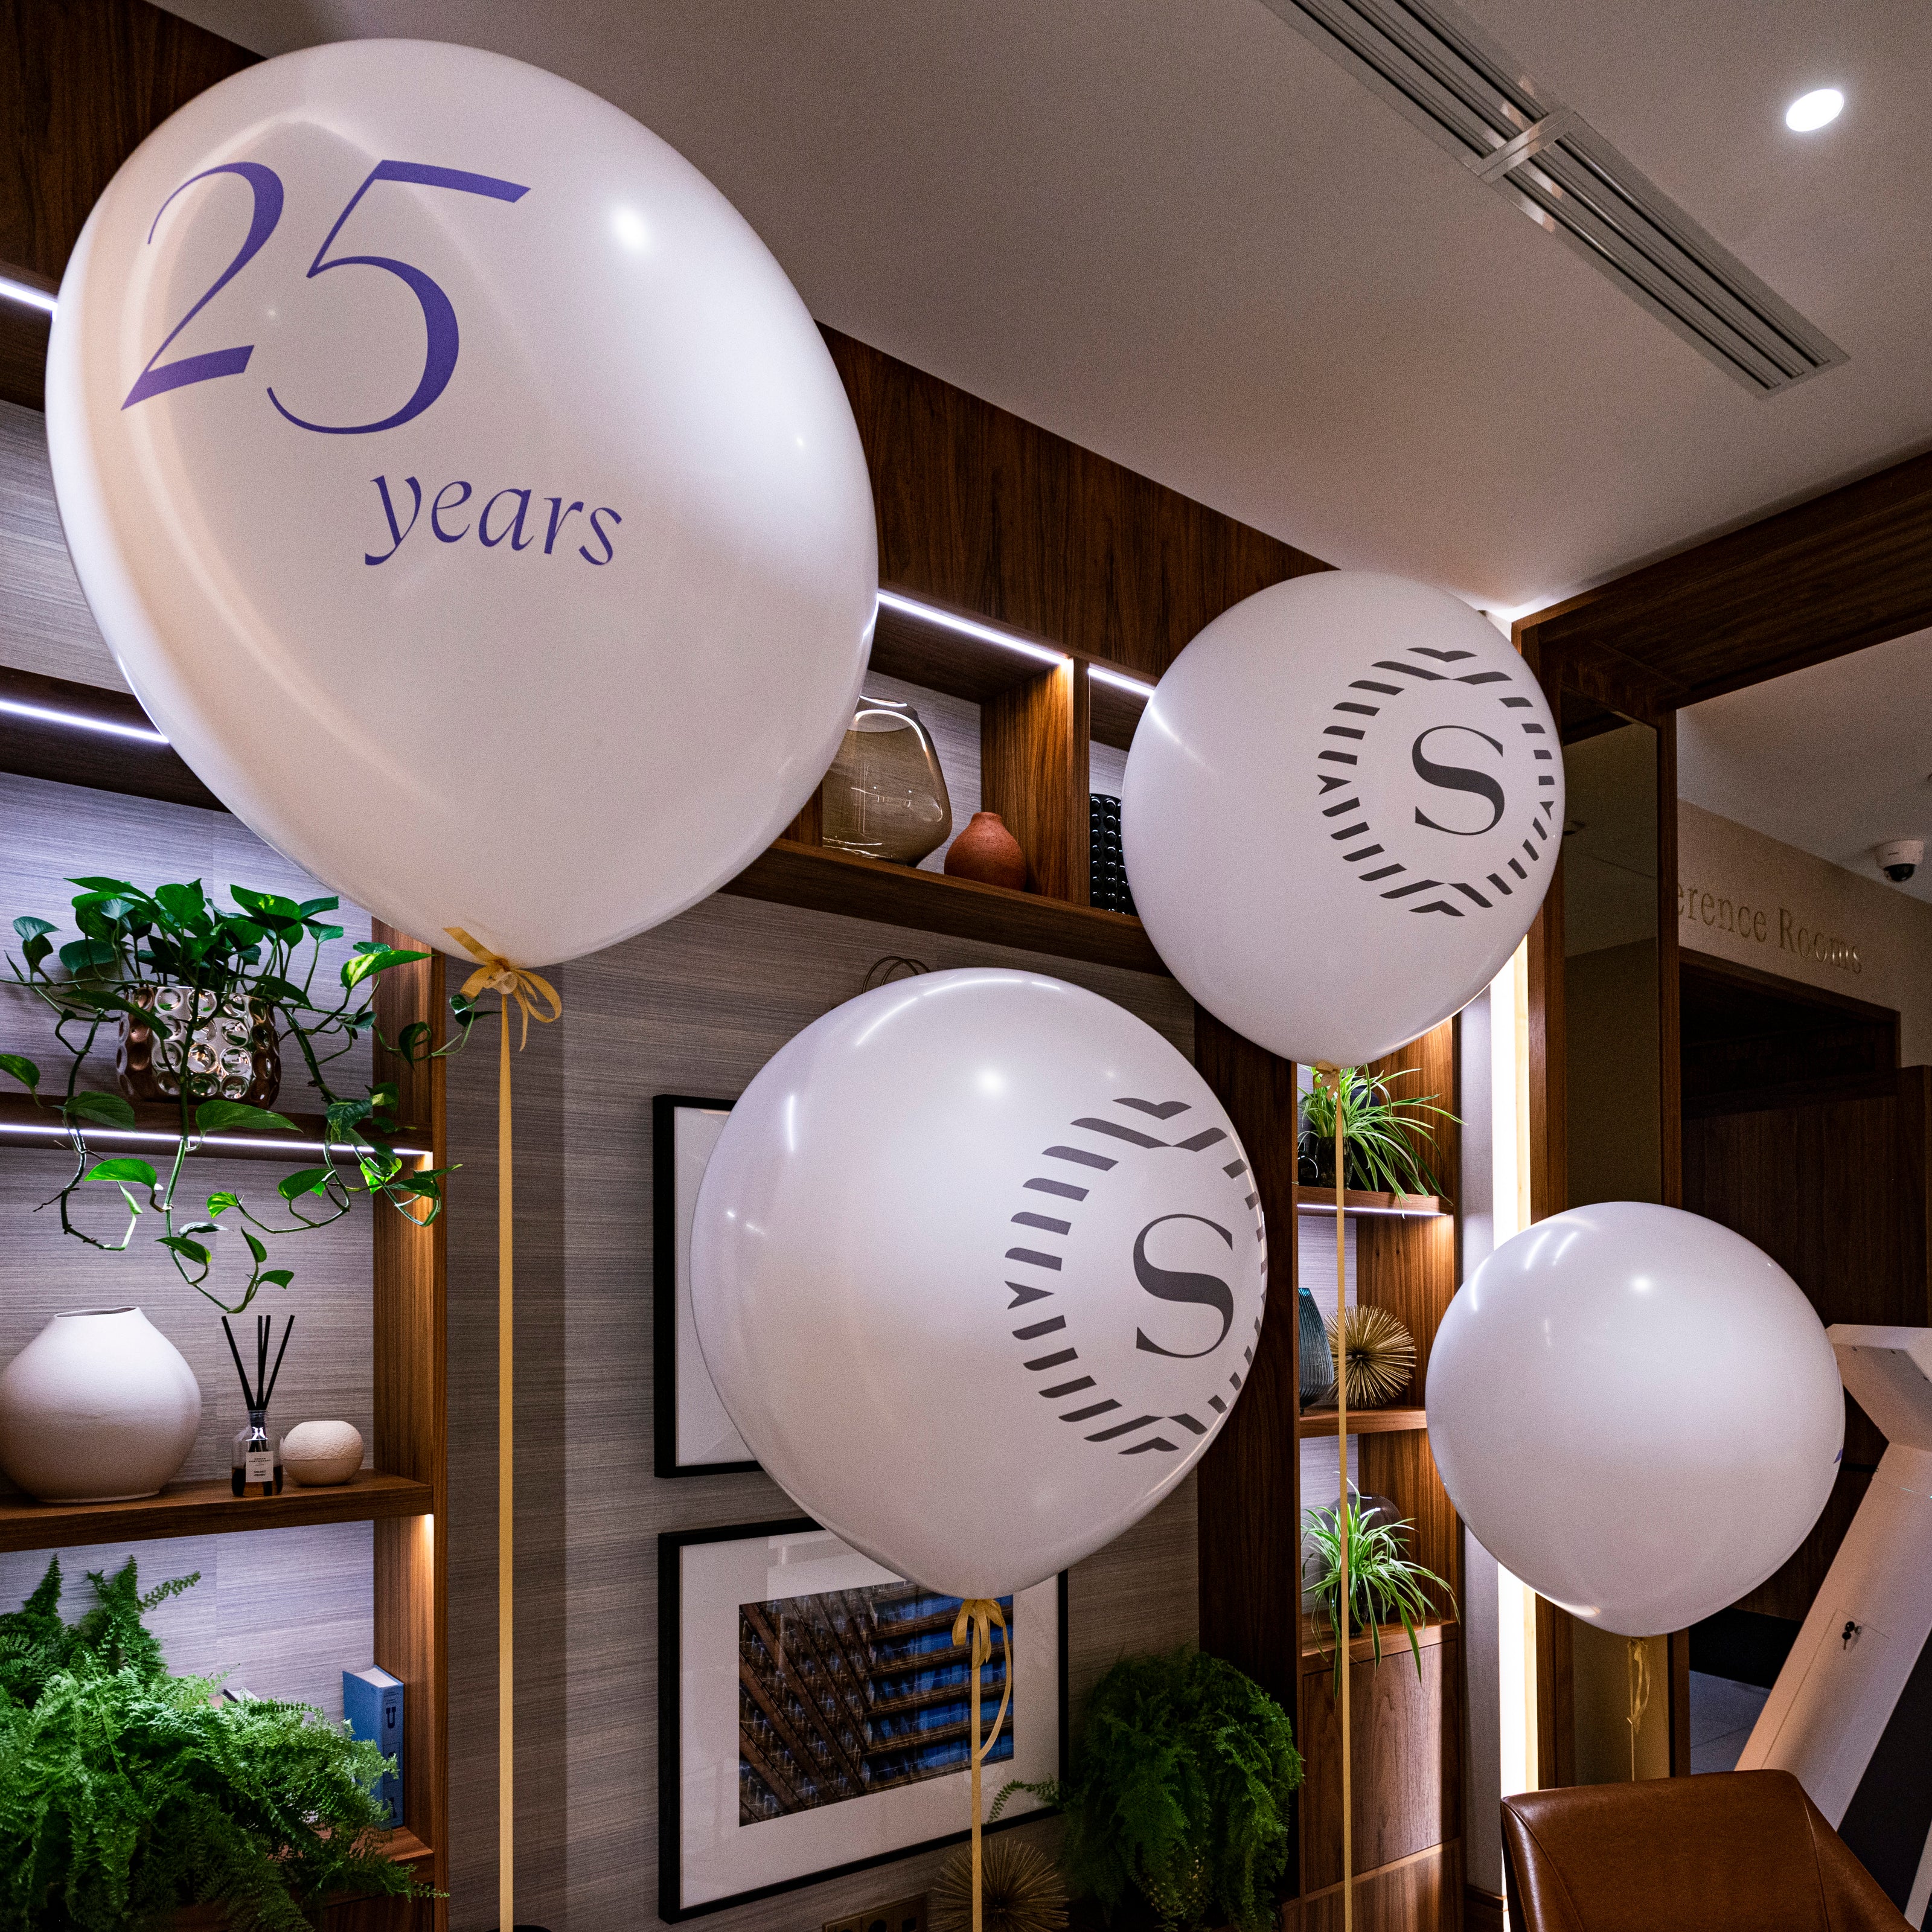 Balony giganty w lobby hotel Sheraton dekoracja balonowa z okazji 25 lecia